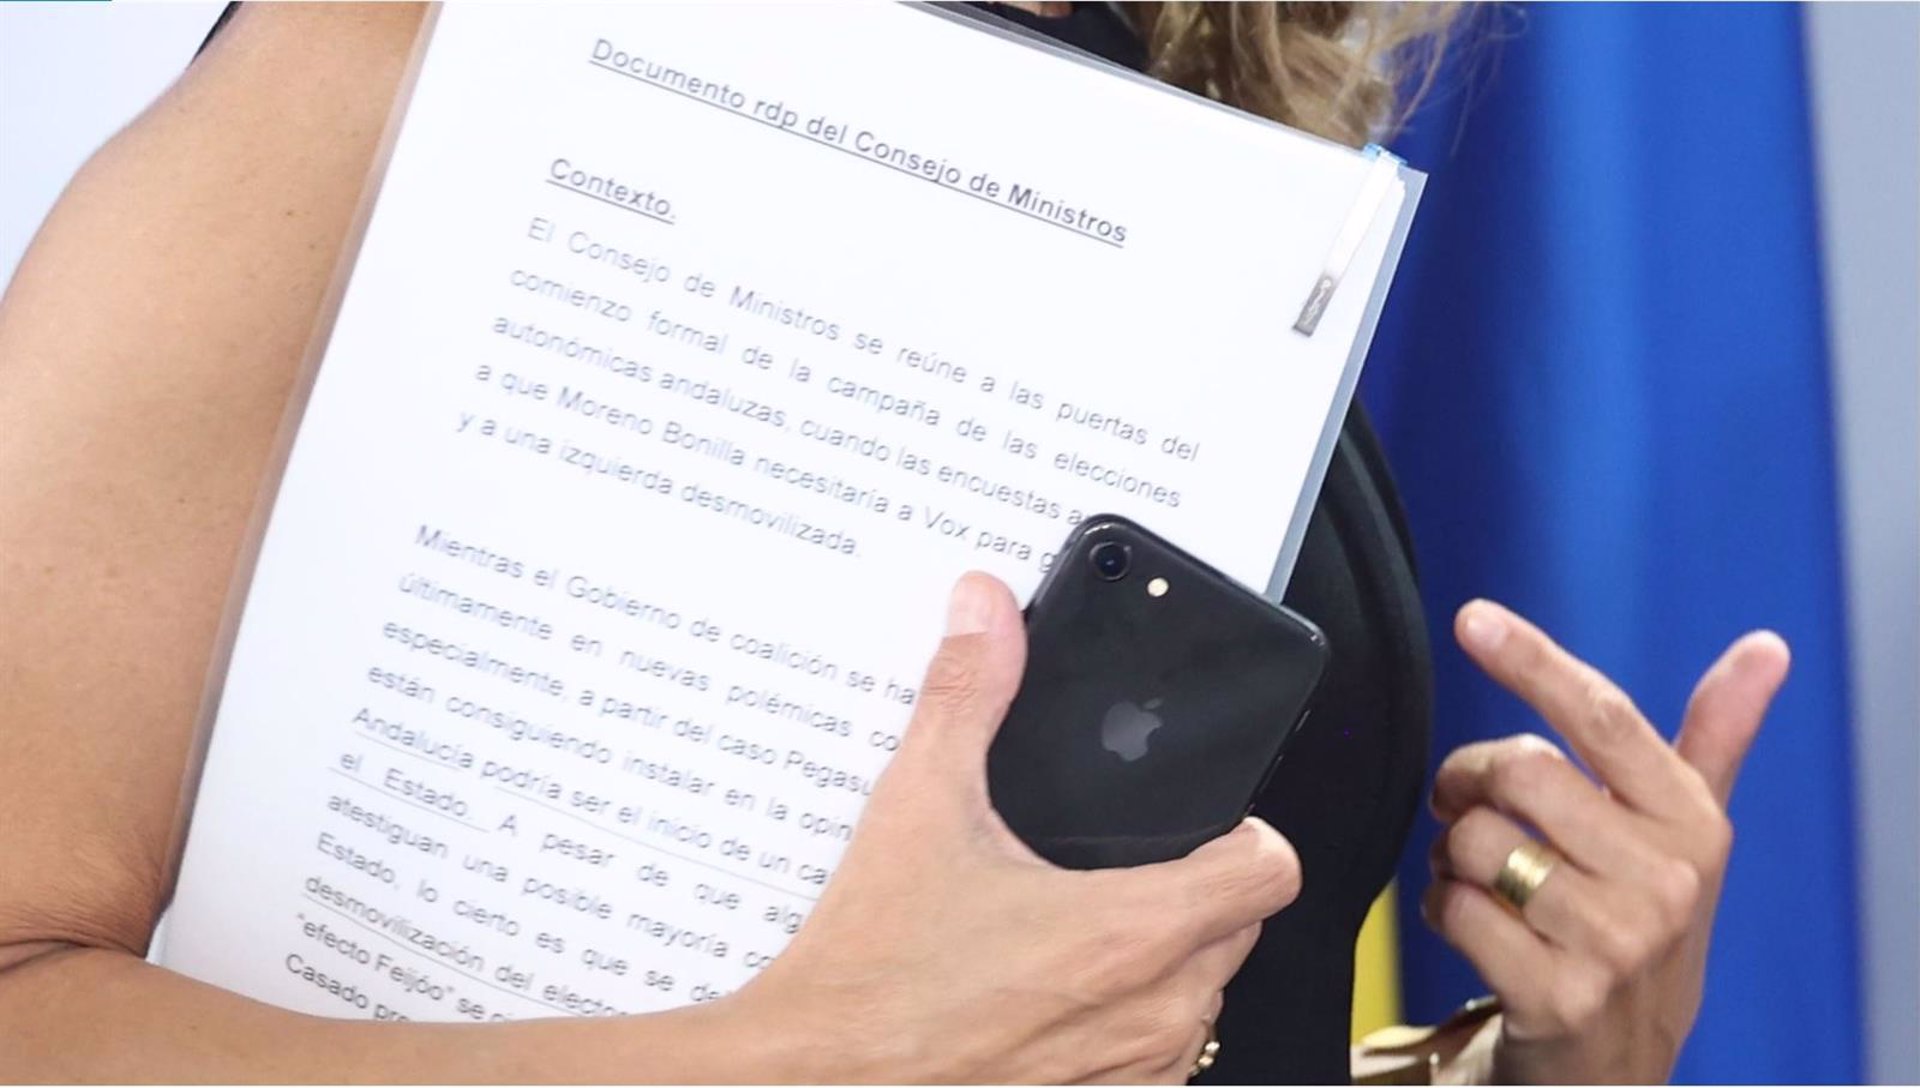 Captura del documento que sostenía Yolanda Díaz en la rueda de prensa en Moncloa